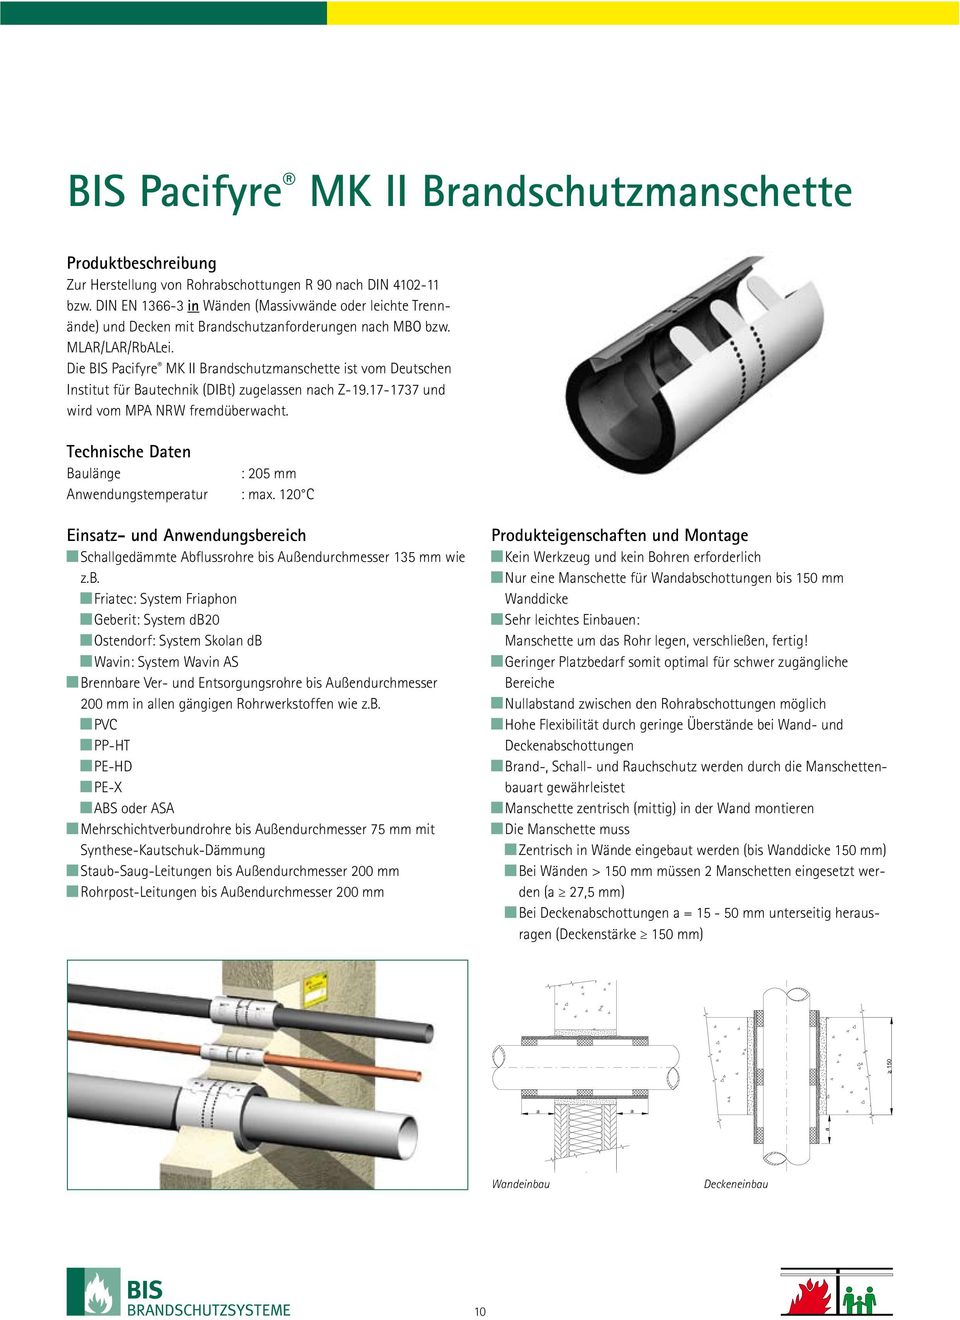 Die BIS Pacifyre MK II Brandschutzmanschette ist vom Deutschen Institut für Bautechnik (DIBt) zugelassen nach Z-19.17-1737 und wird vom MPA NRW fremdüberwacht.